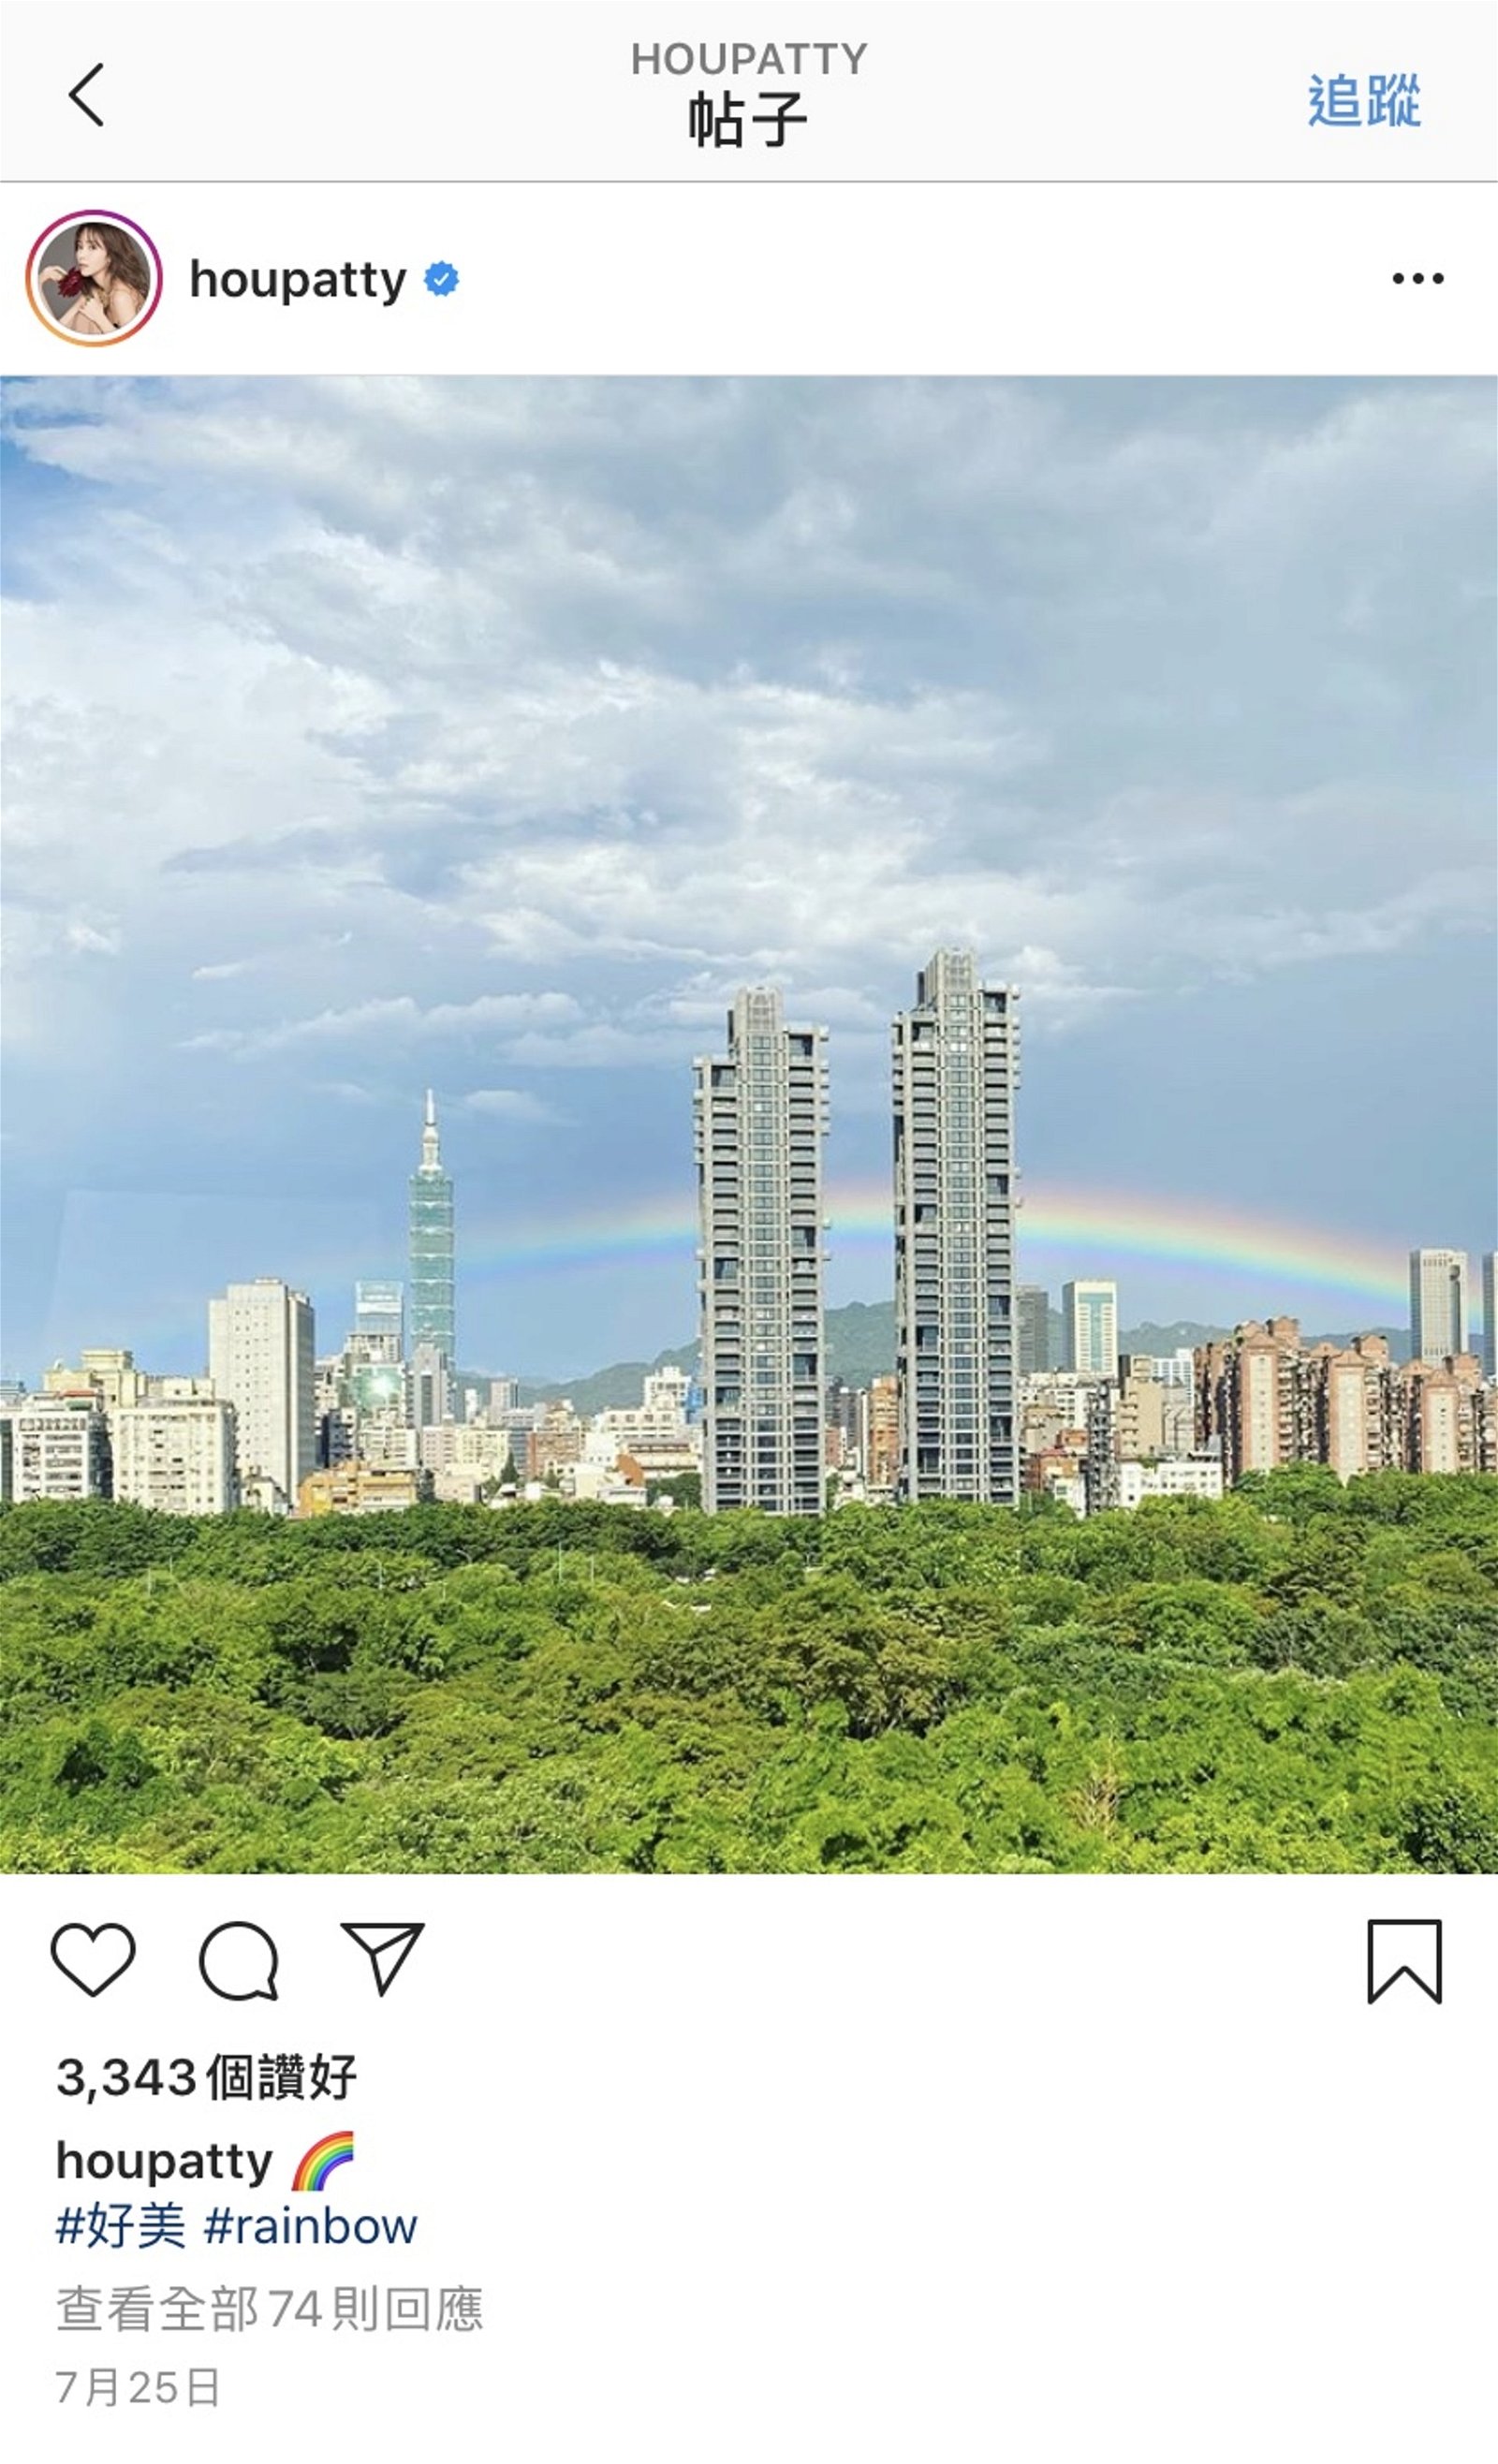 侯佩岑月前贴了一张彩虹风景照。